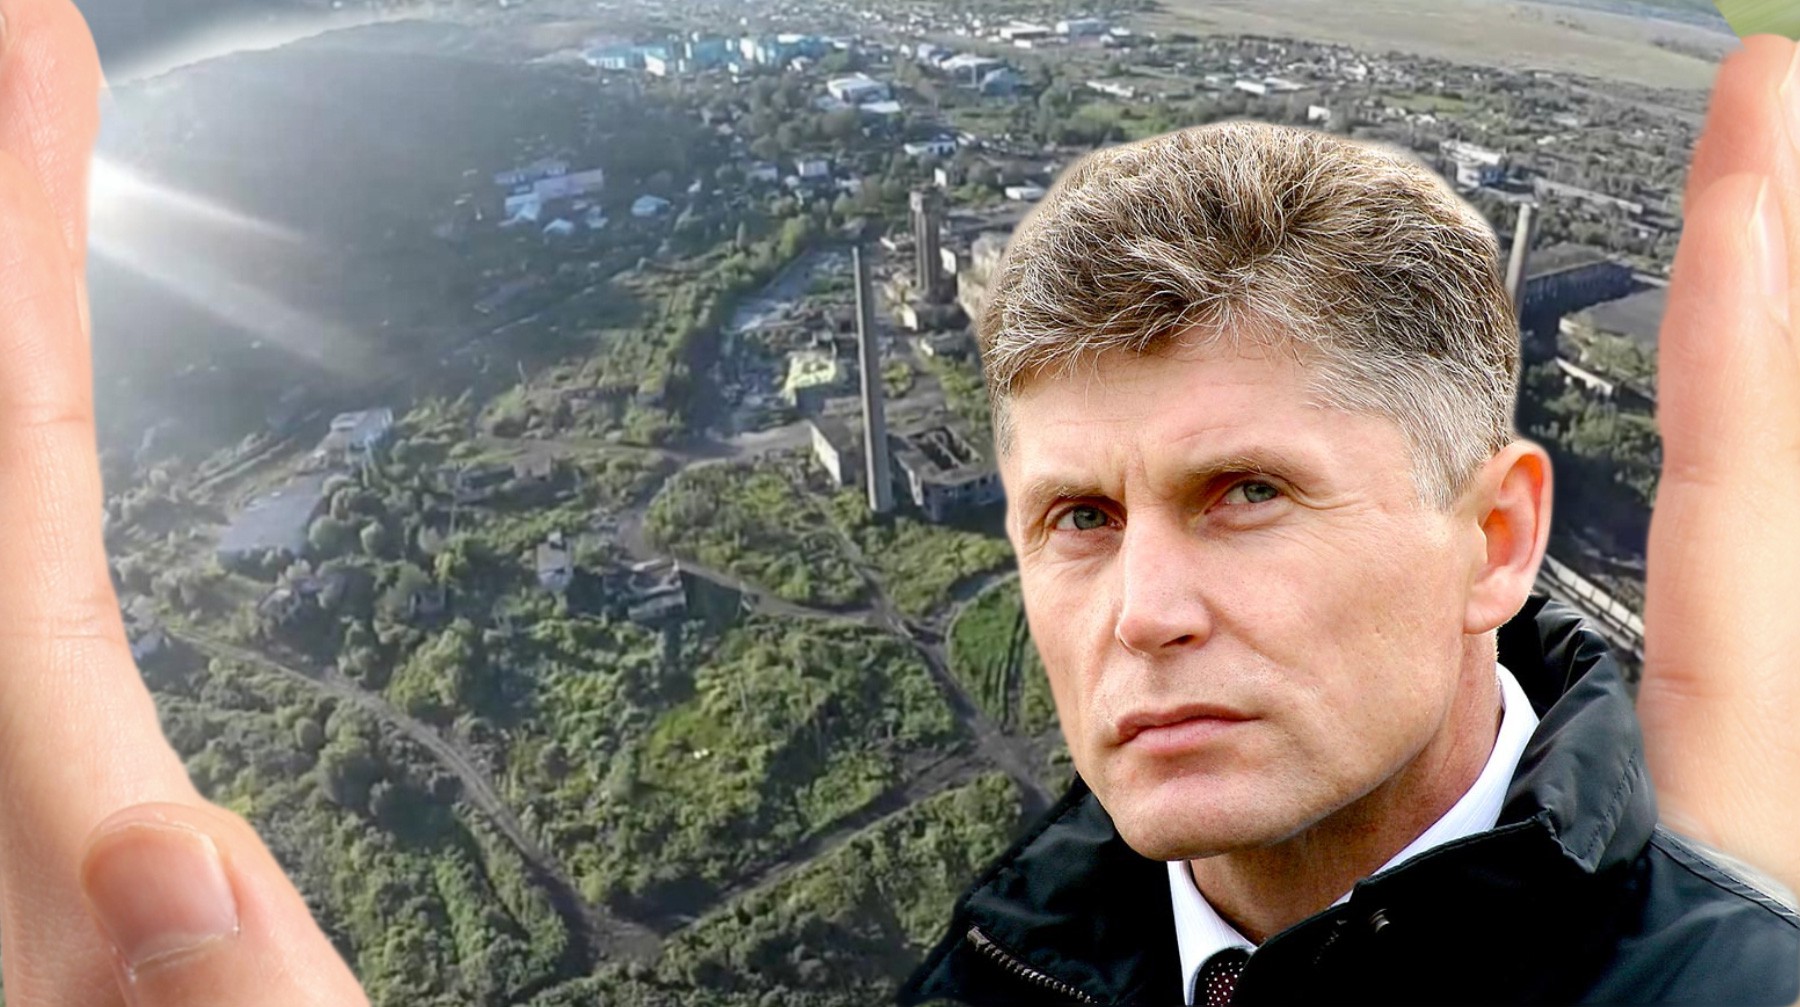 Dailystorm - Два месяца без руководителя. Уход Олега Кожемяко из Сахалинской области погрузил регион в политический вакуум